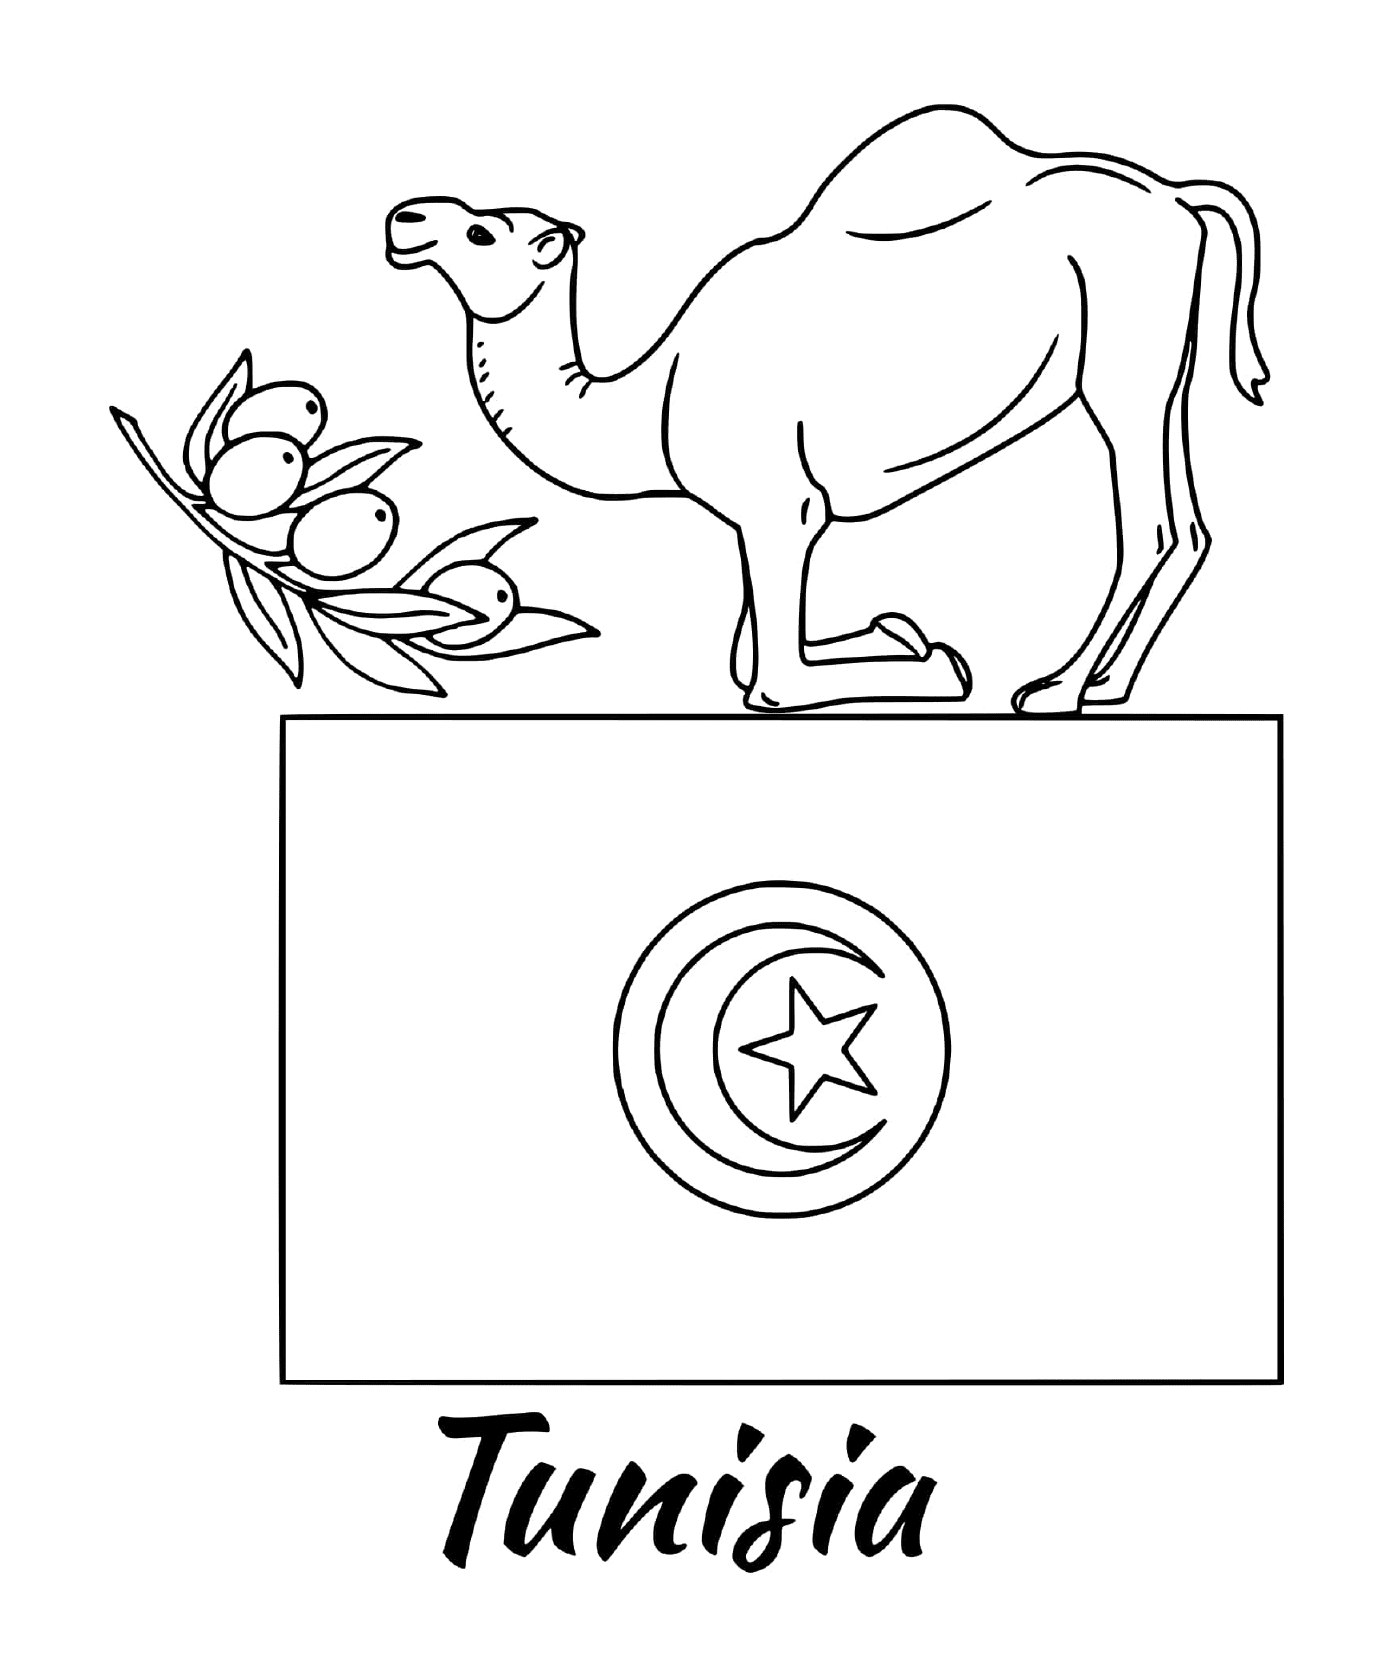  علم تونس مع الجمل 